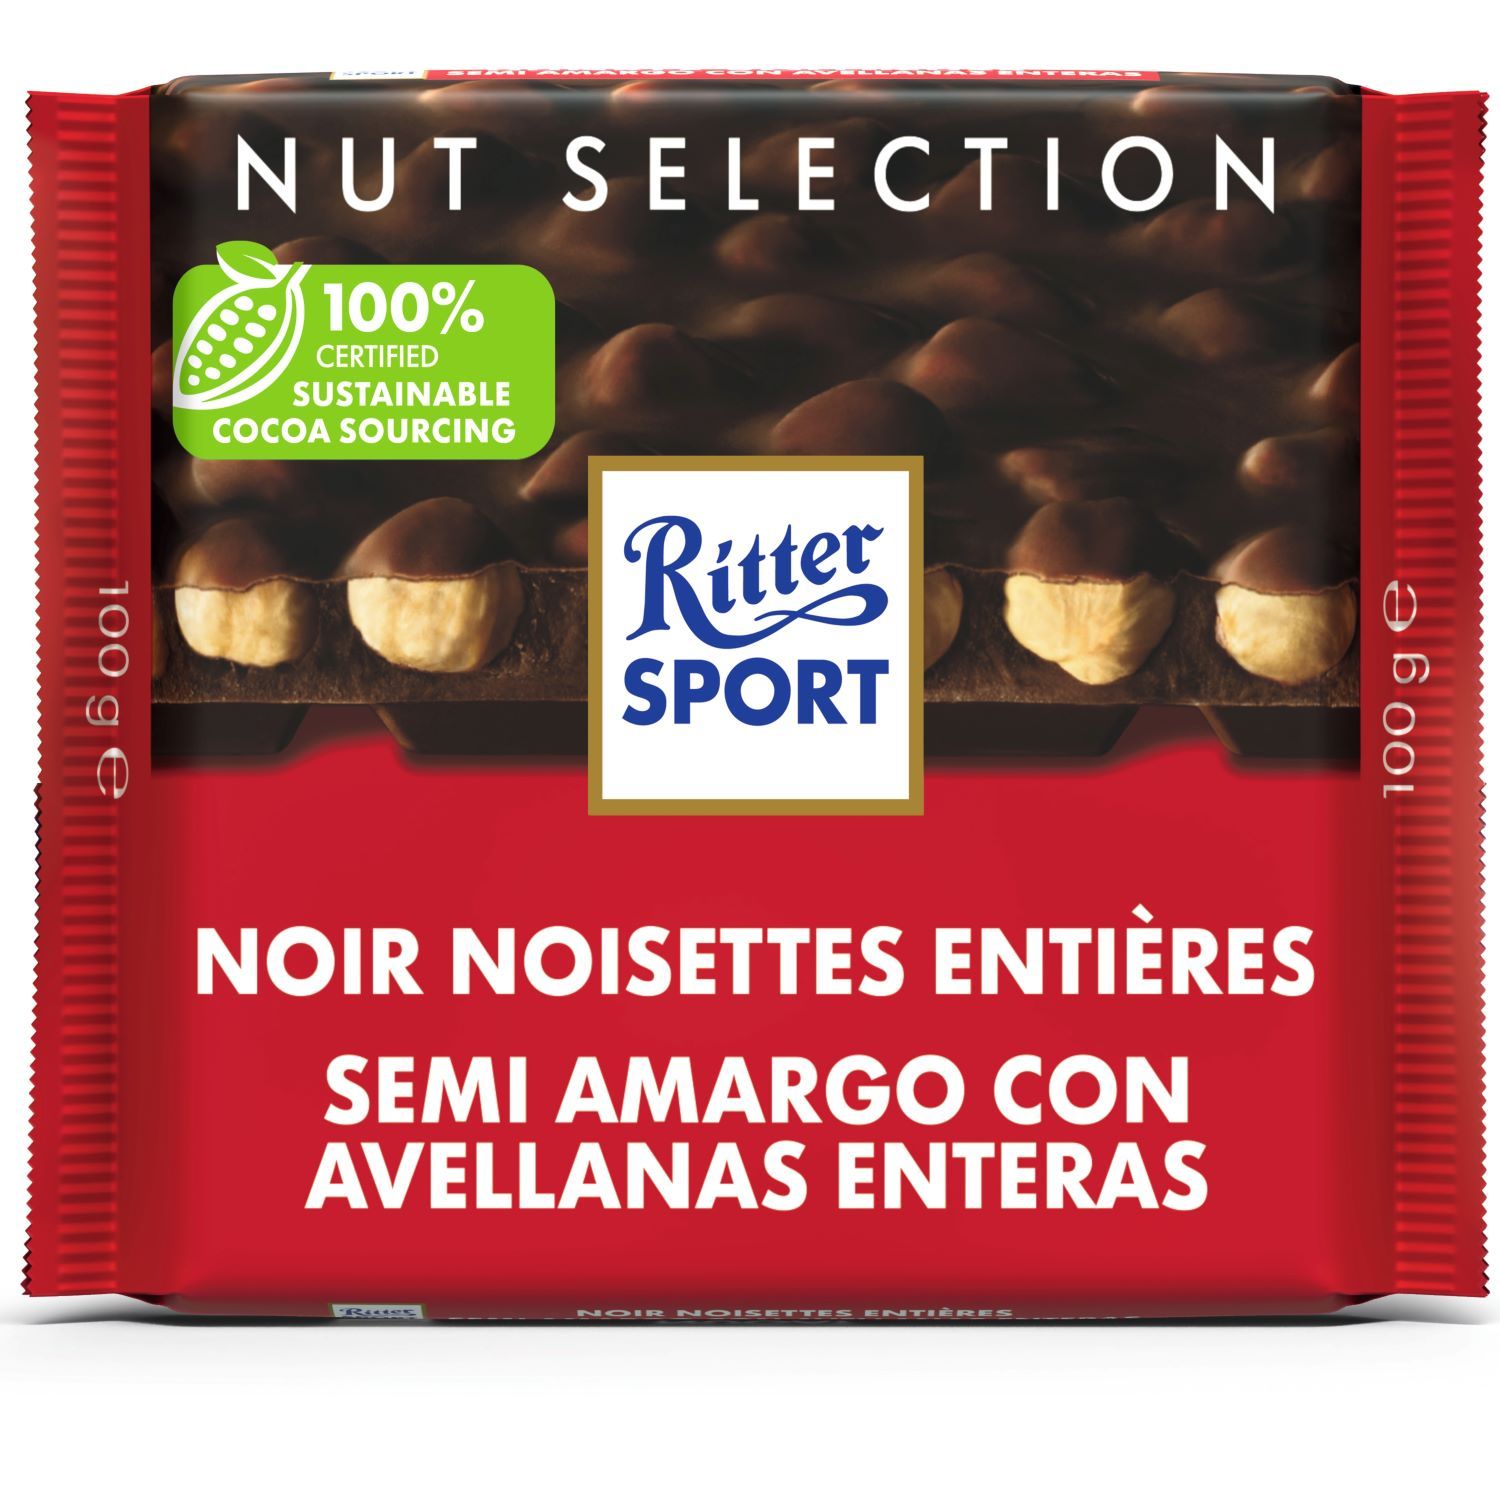 Poulain Maxi Noir Feuilleté & Noisettes entières - Chocolat Poulain